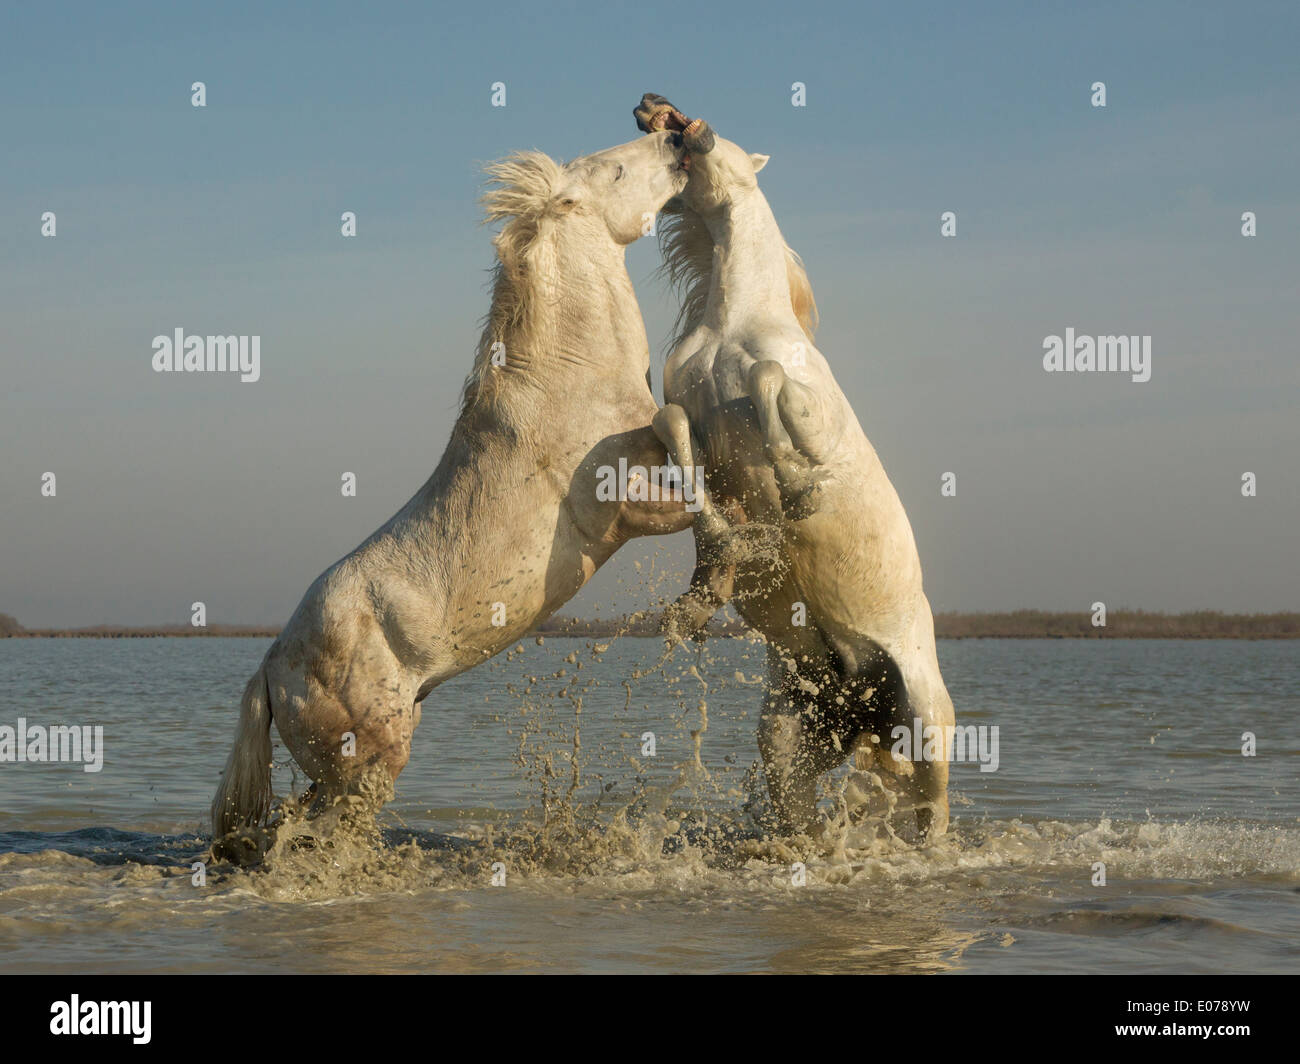 Caballos de Camargue, sementales, sparring en el agua Foto de stock